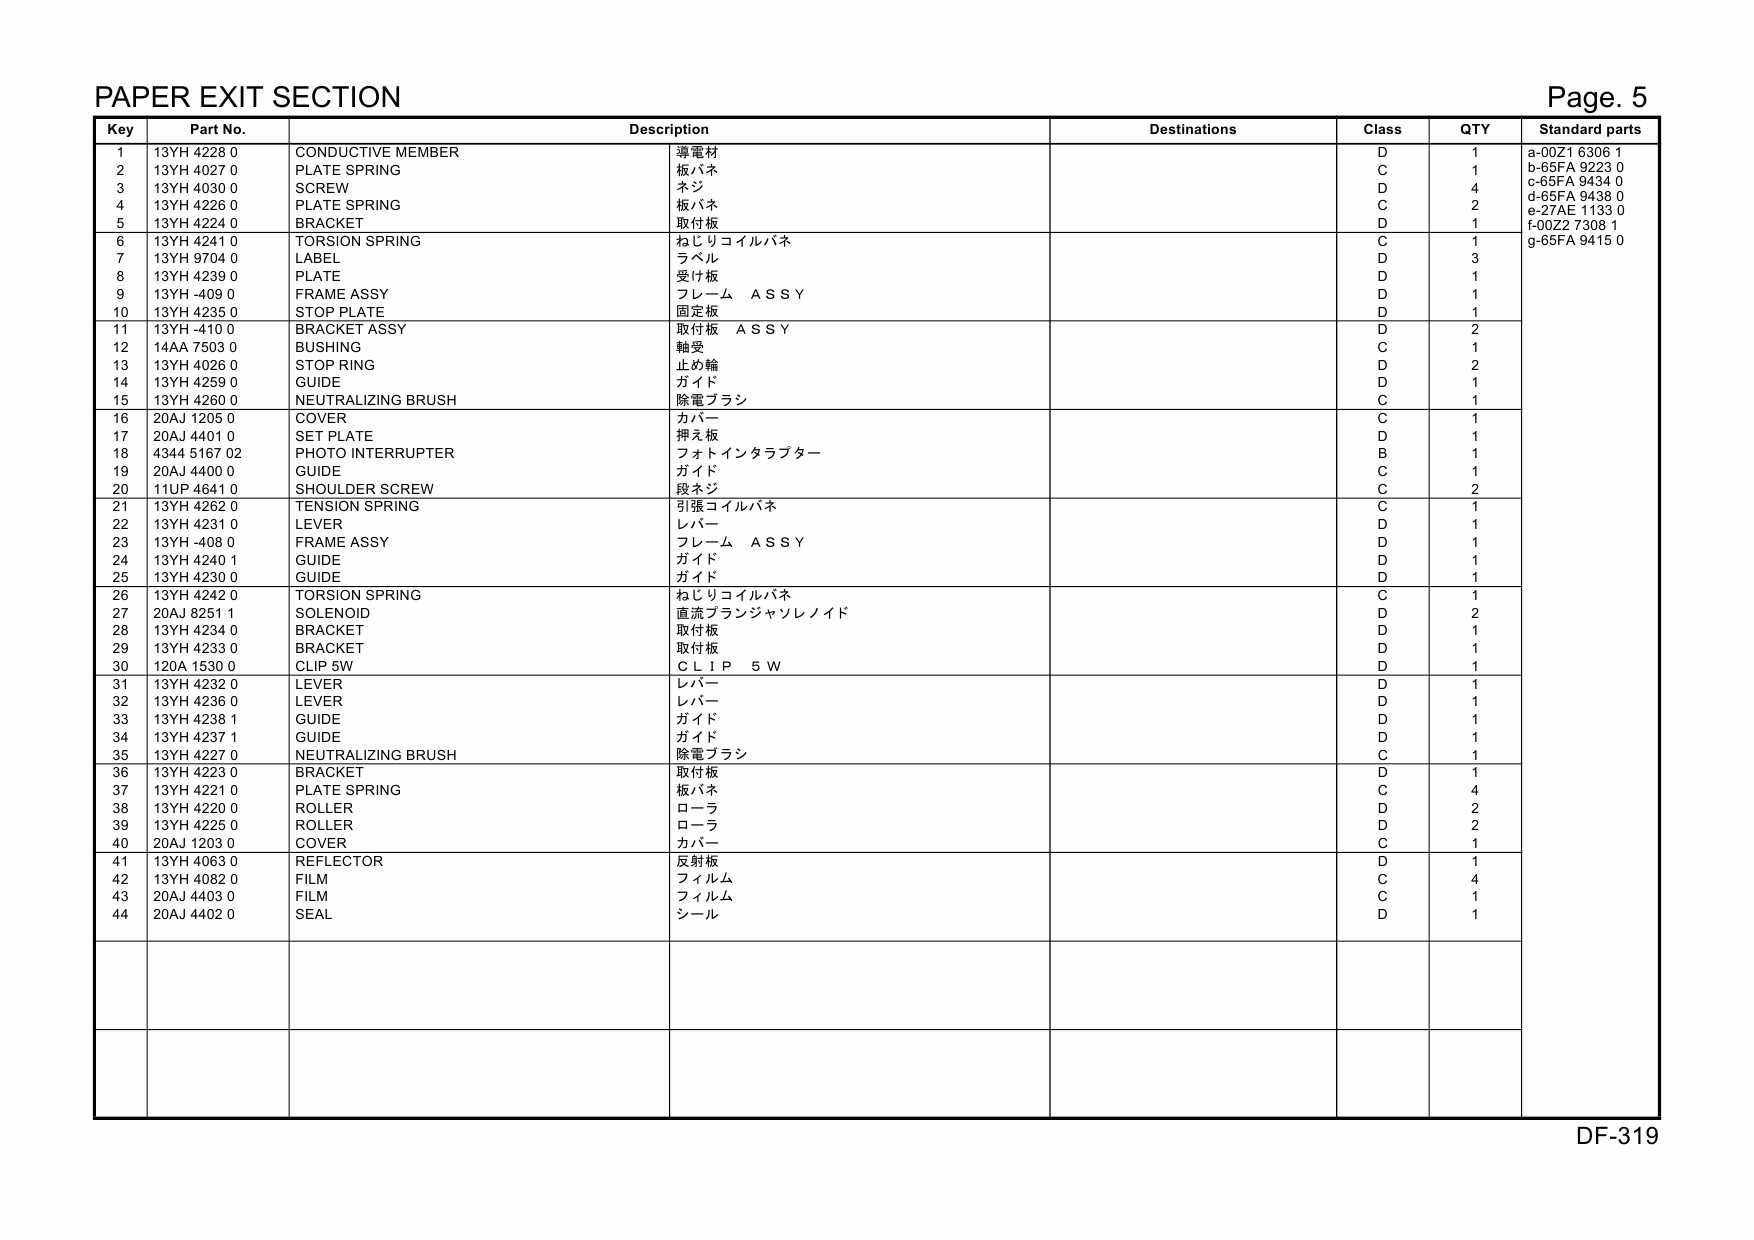 Konica-Minolta Options DF-319 20AJ Parts Manual-5